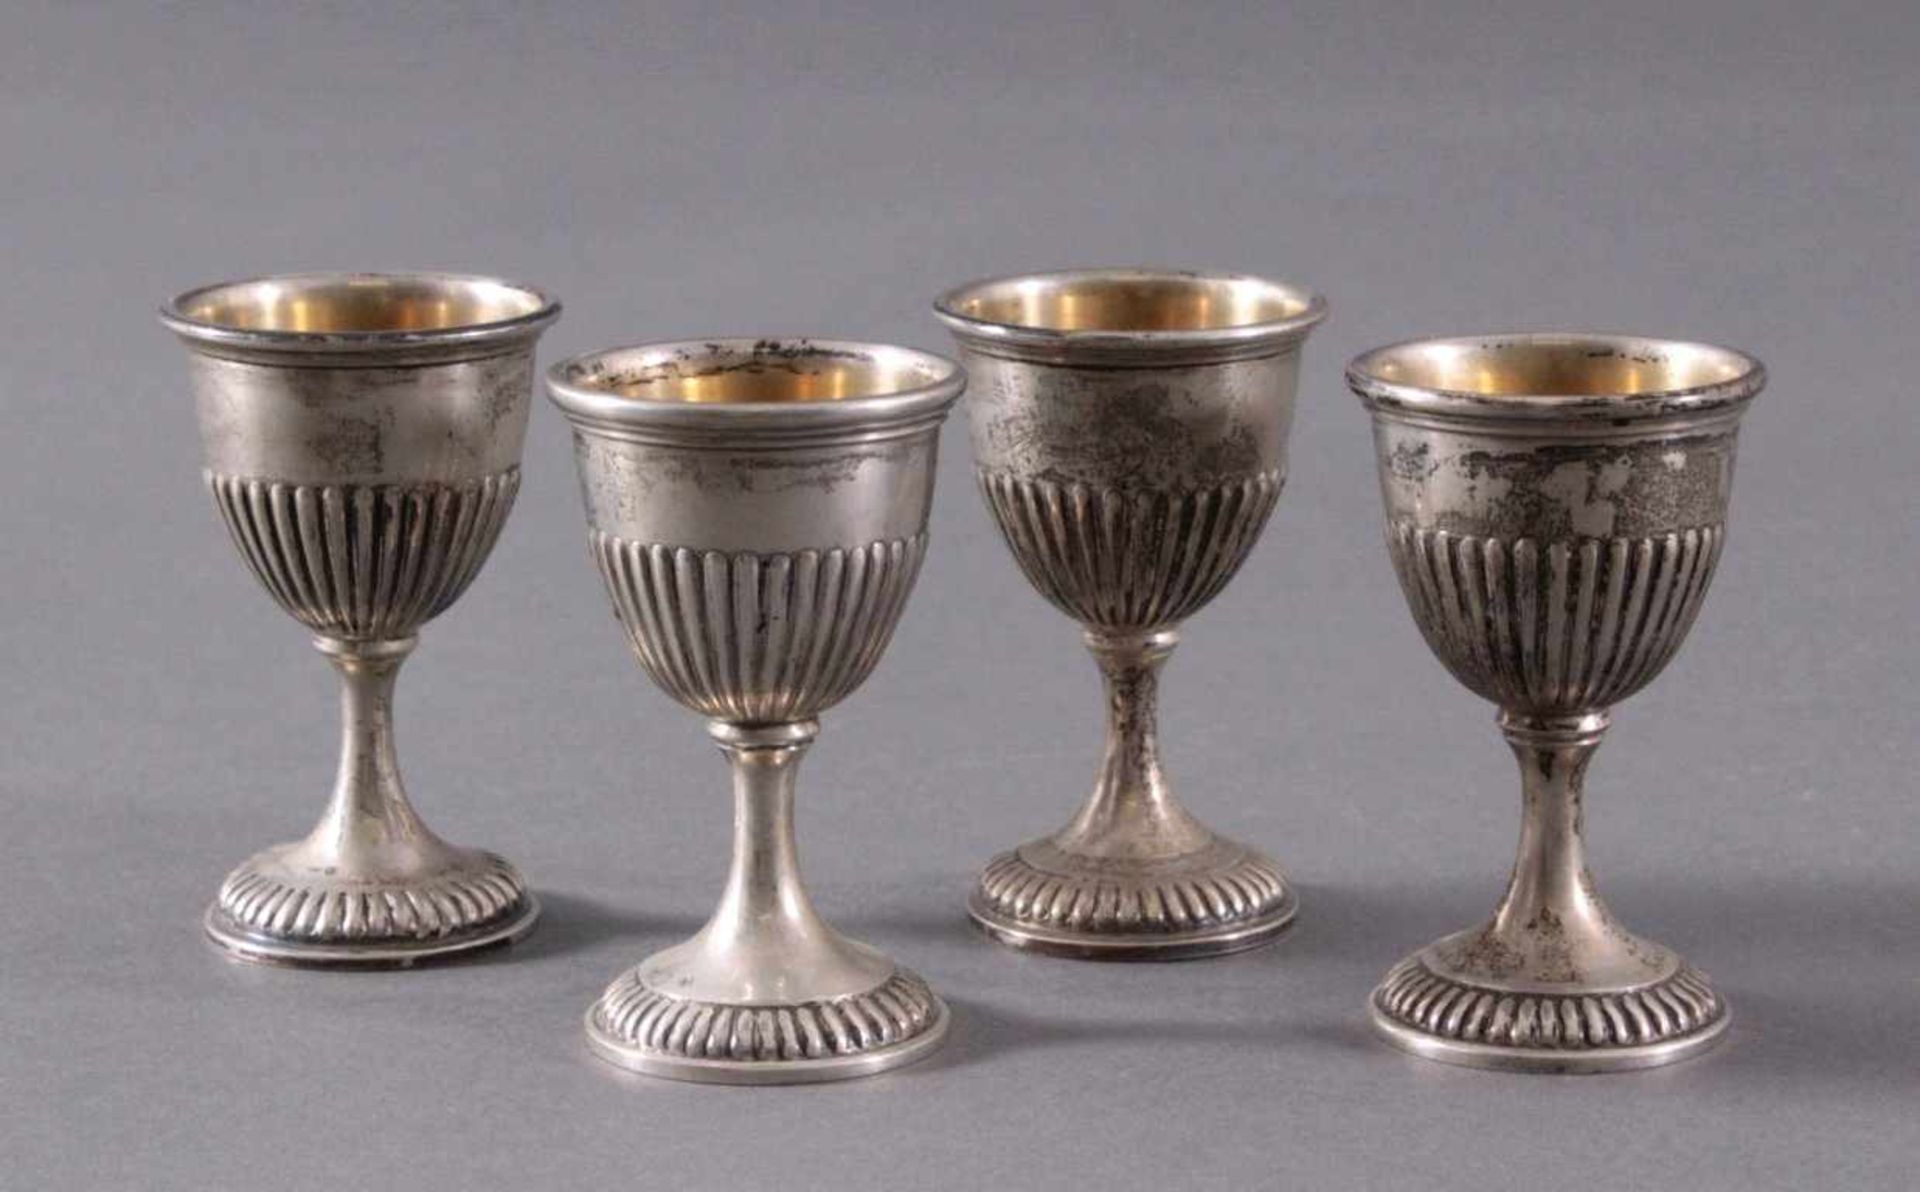 4 silberne Eierbecher um 1900Deutsche Punze Sichel und Krone 800er Silber, ca. Höhe 7 cm,191 g.